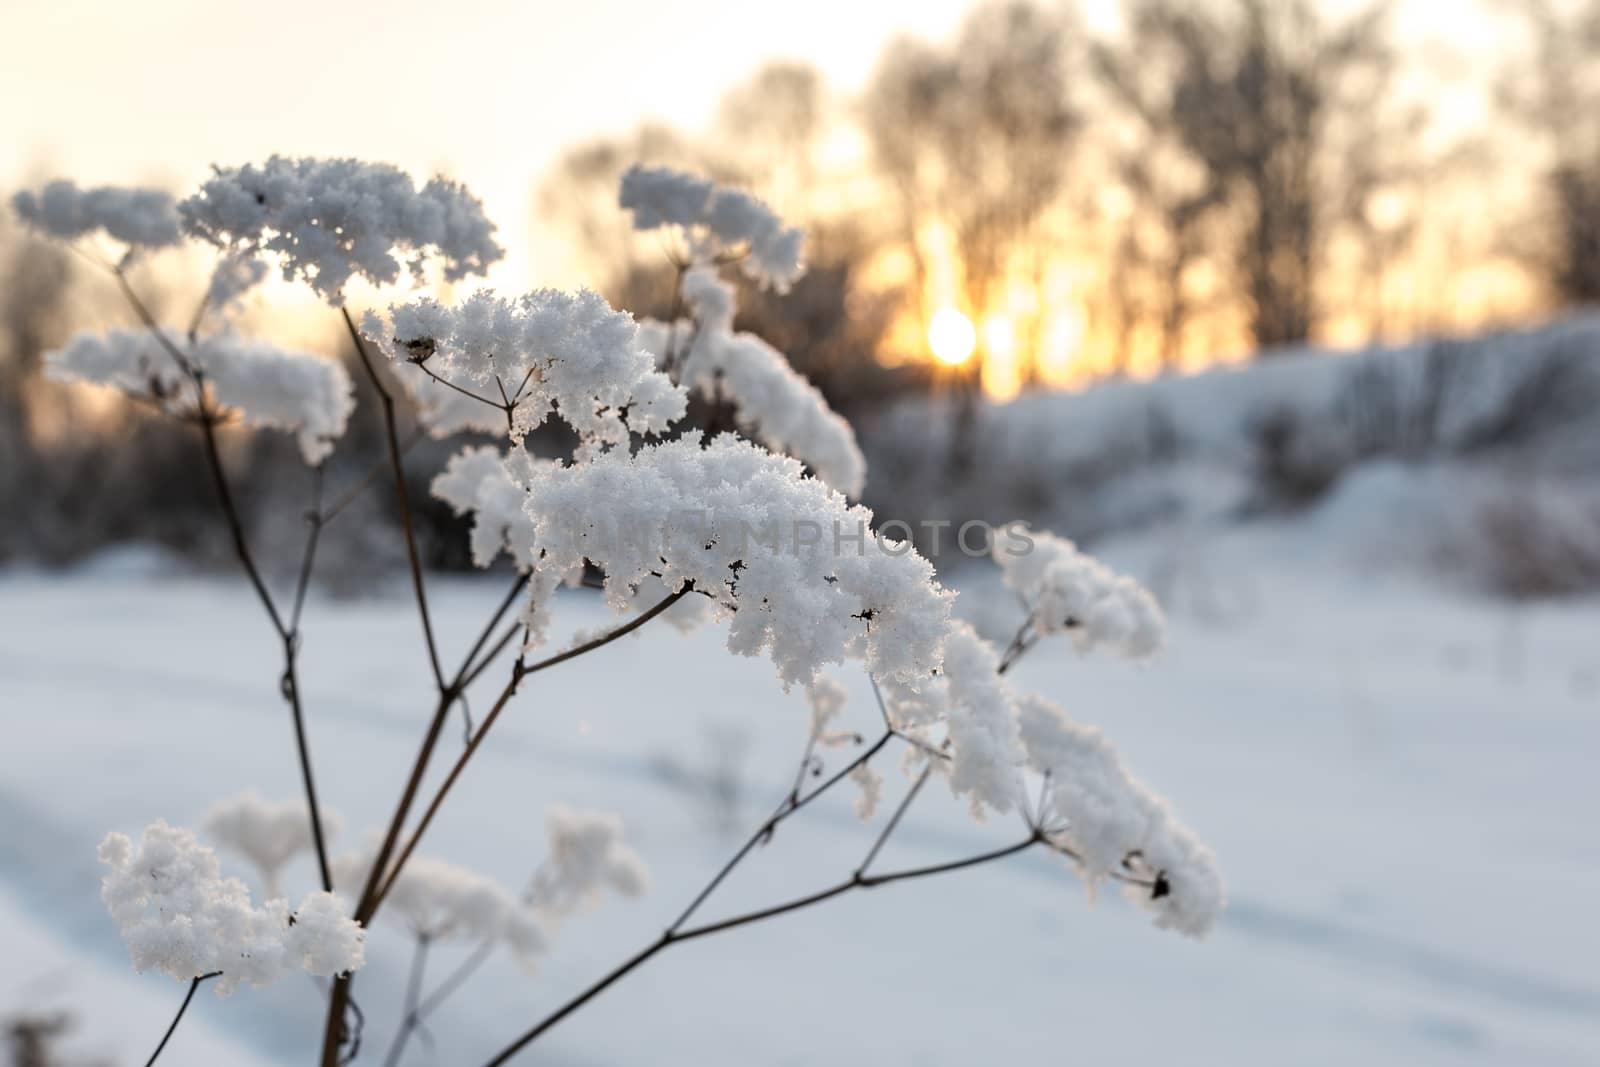 Winter landscape by Ohotnik